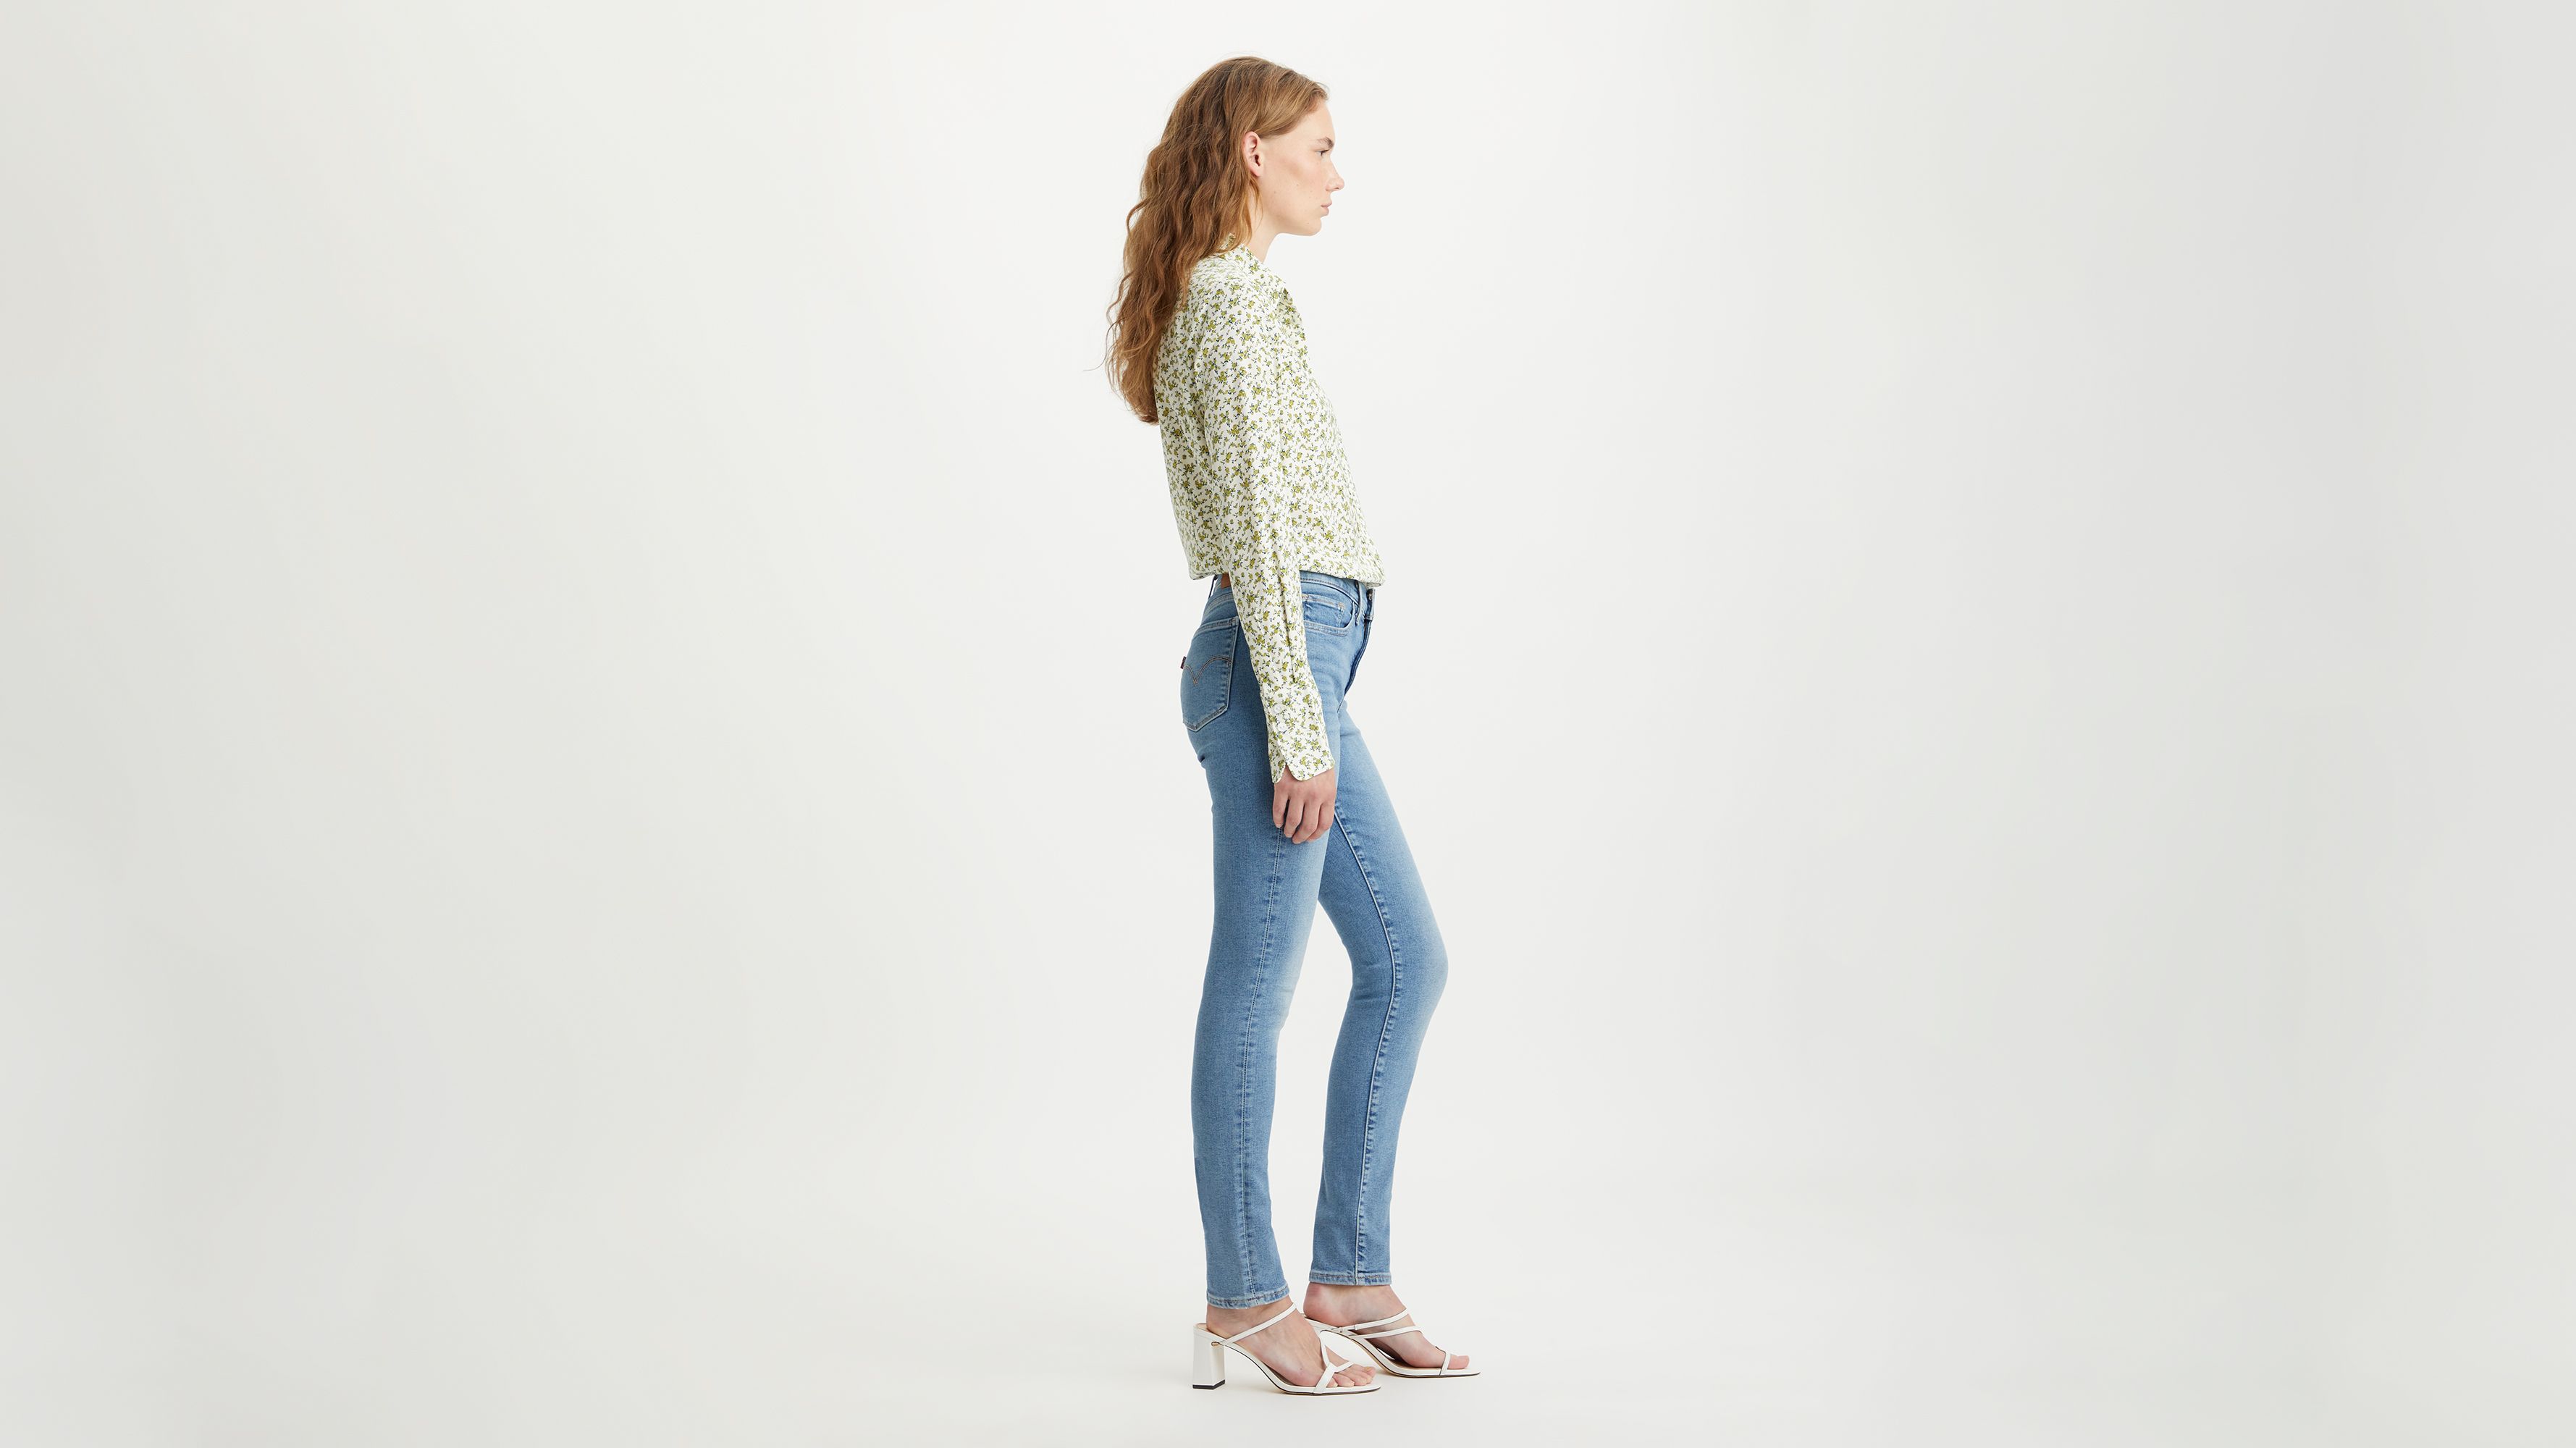 Buy Sky Soars: Fashion Elegance in Women's Wide-Leg Denim Jeans (30, Ice  Blue) at